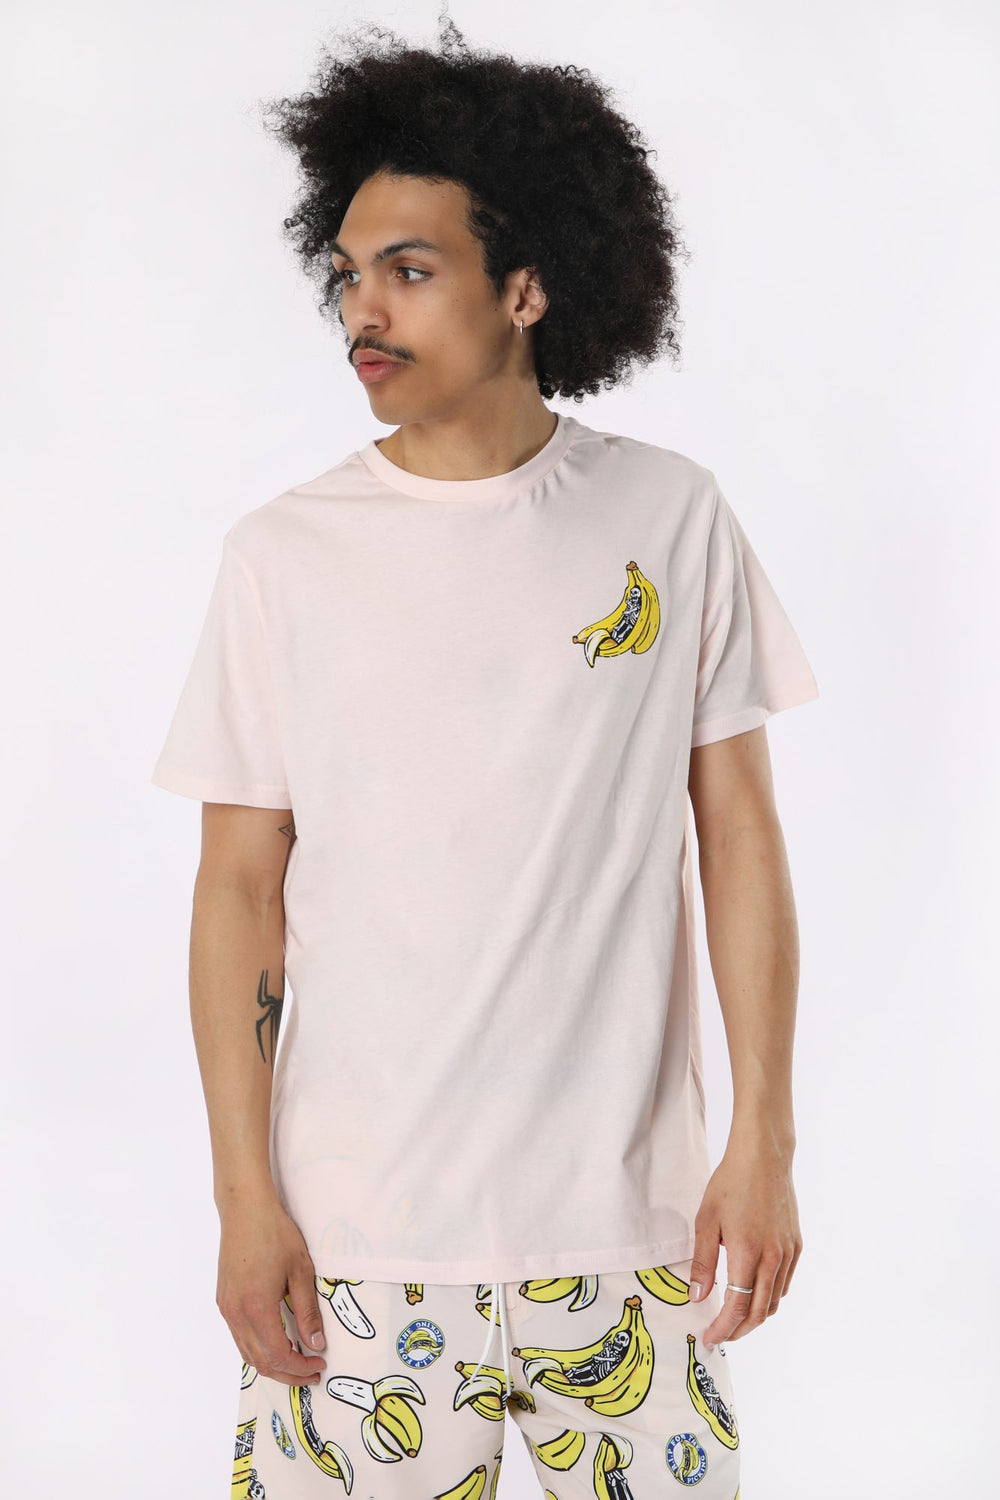 T-Shirt Imprimé Squelette et Banane Arsenic Homme T-Shirt Imprimé Squelette et Banane Arsenic Homme